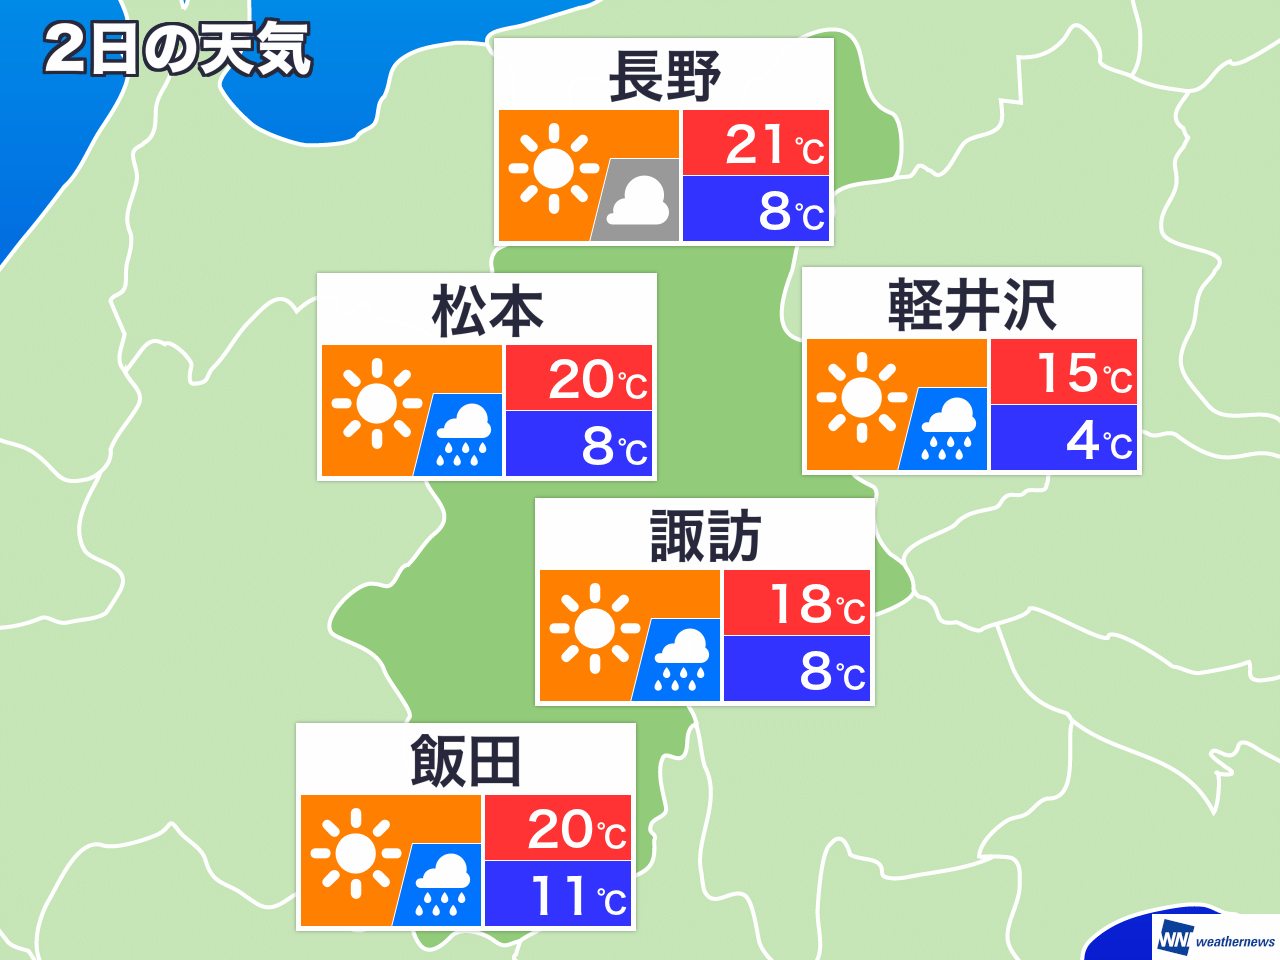 飯田 市 天気 予報